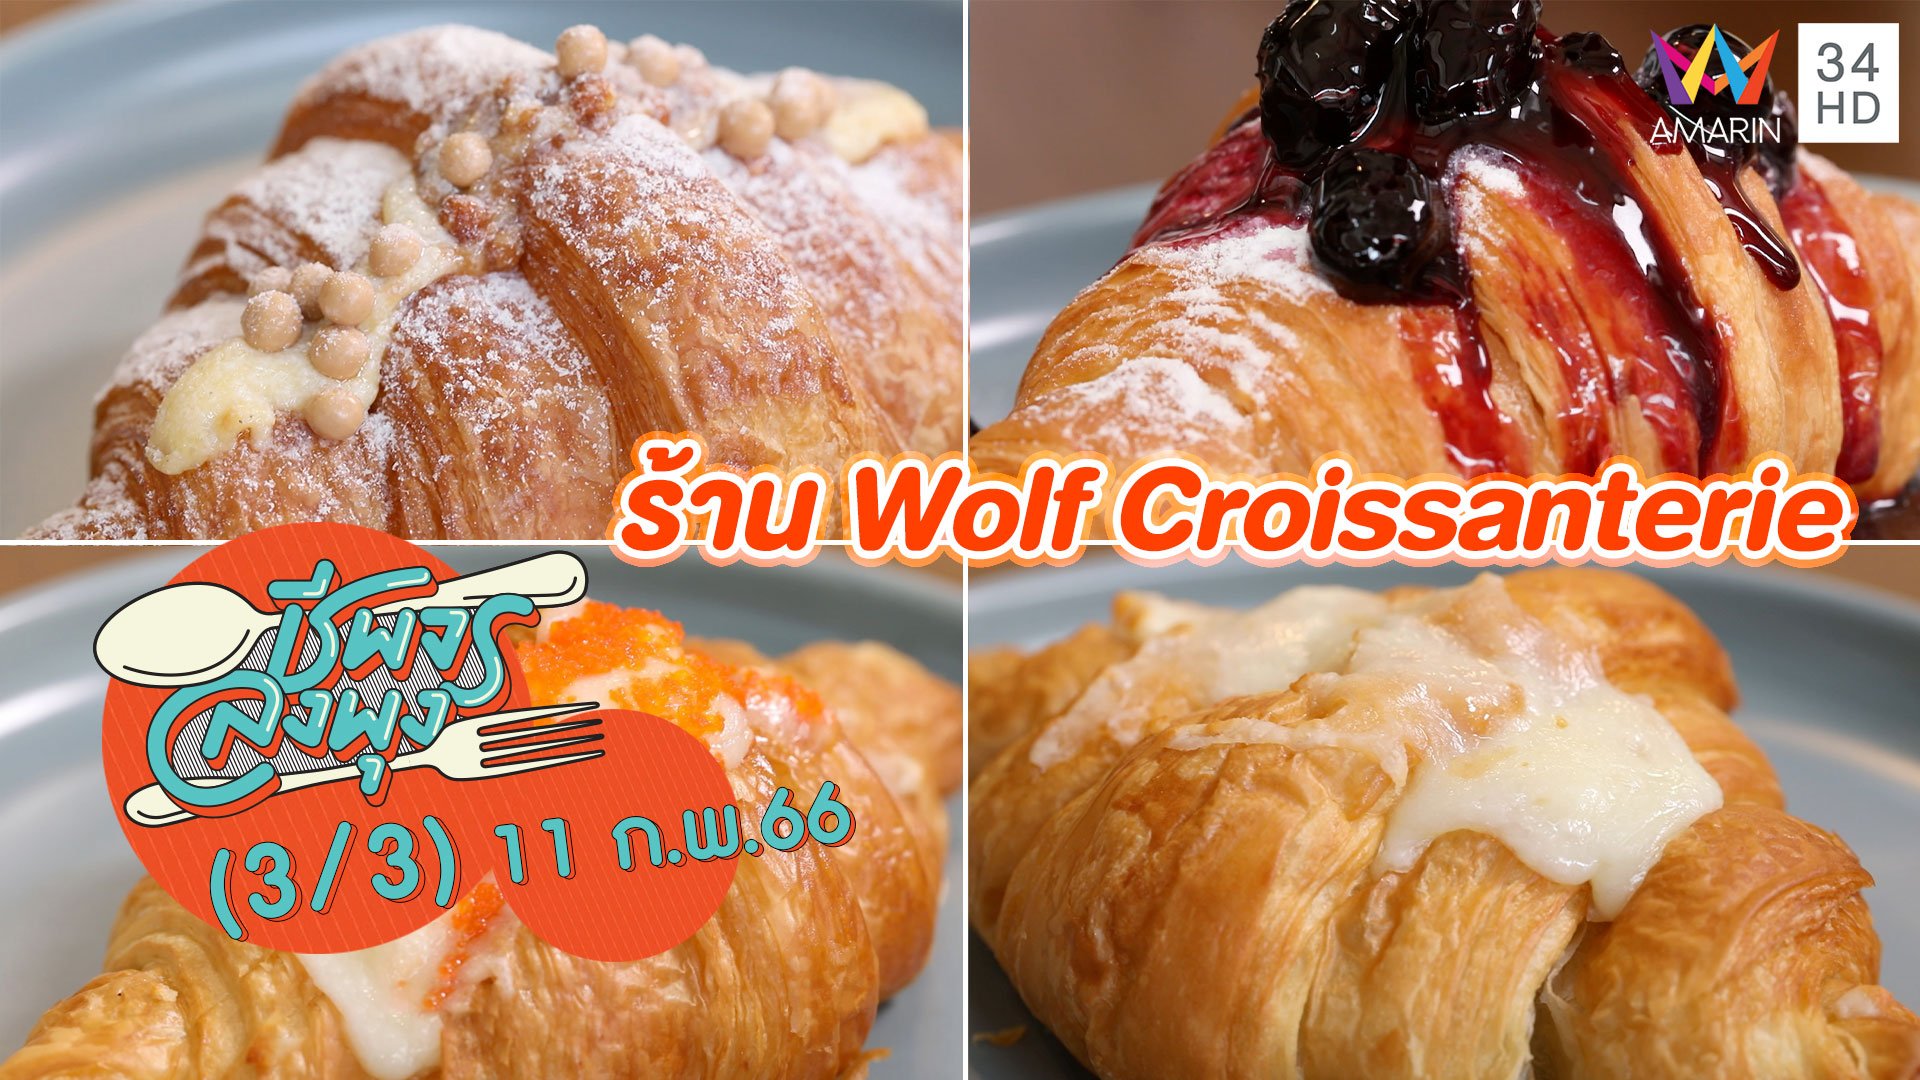 สวรรค์ของคนรักครัวซองต์ @ ร้าน Wolf Croissanterie | ชีพจรลงพุง | 11 ก.พ. 66 (3/3) | AMARIN TVHD34